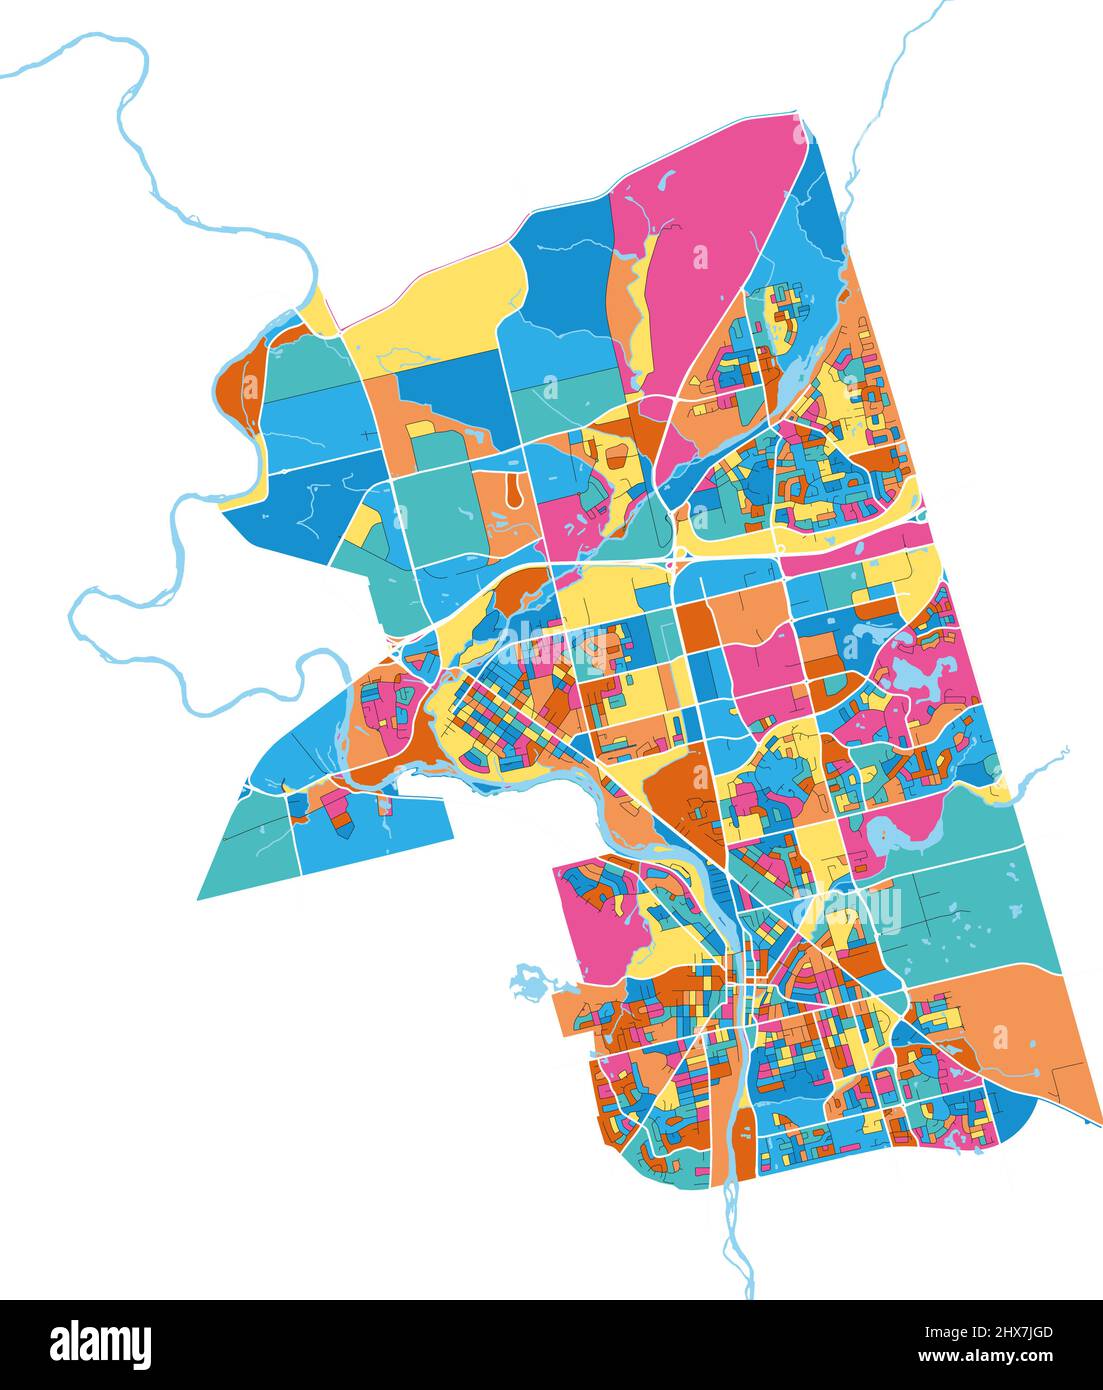 Cambridge, Ontario, Kanada farbenfrohe, hochauflösende Vektorgrafik-Karte mit Stadtgrenzen. Weiße Umrisse für Hauptstraßen. Viele Details. Blaue Formen für Stock Vektor